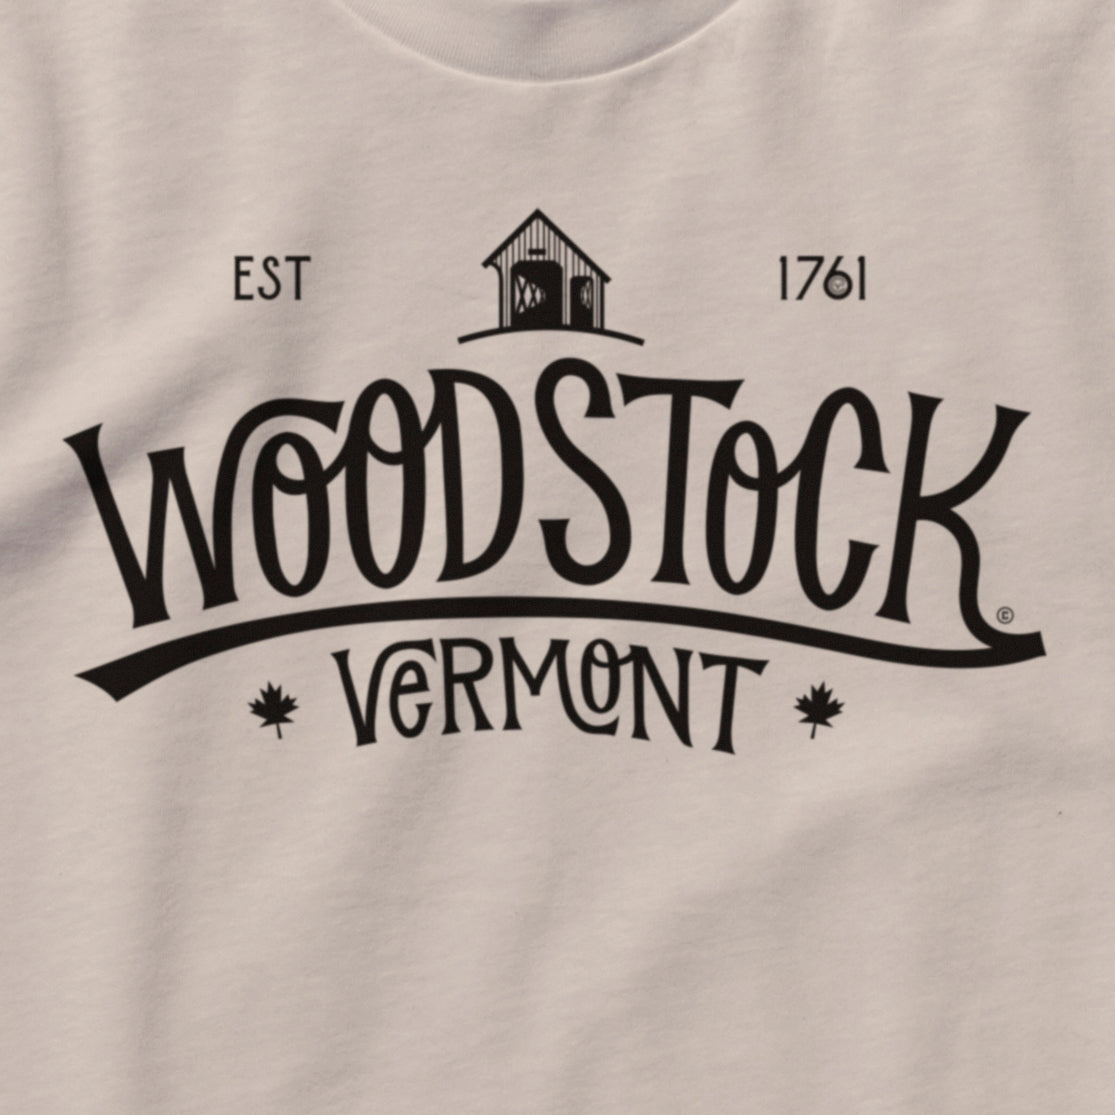 Woodstock 1761 (Long)